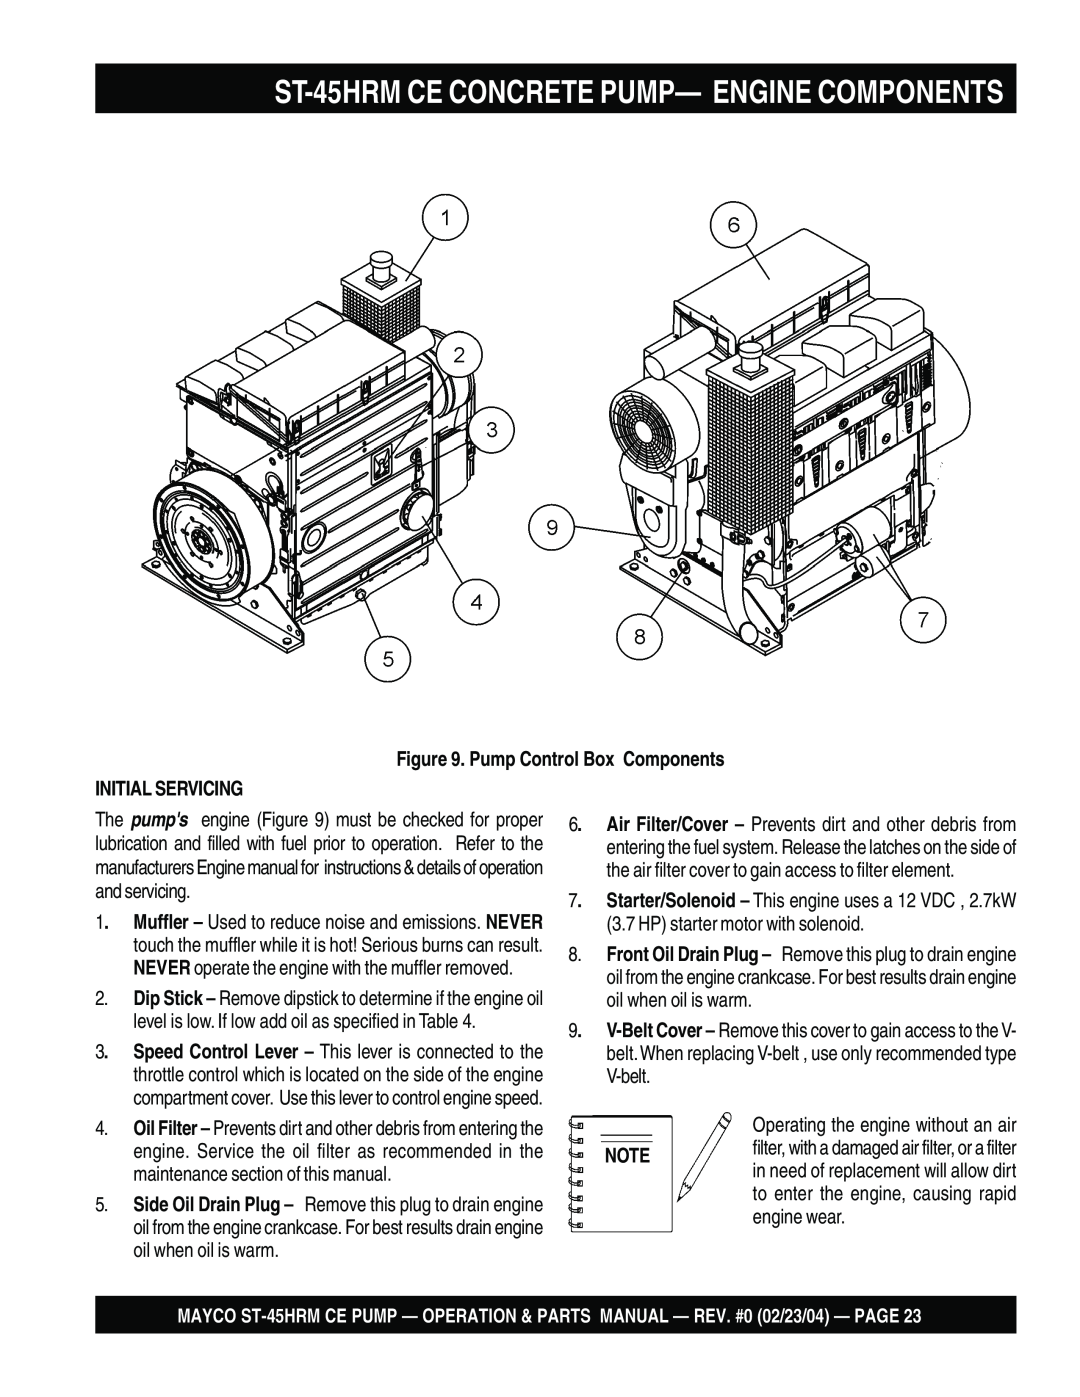 Multiquip ST-45HRM CE manual ST-45HRMCE CONCRETE PUMP— ENGINE COMPONENTS, Pump Control Box Components, Initial Servicing 